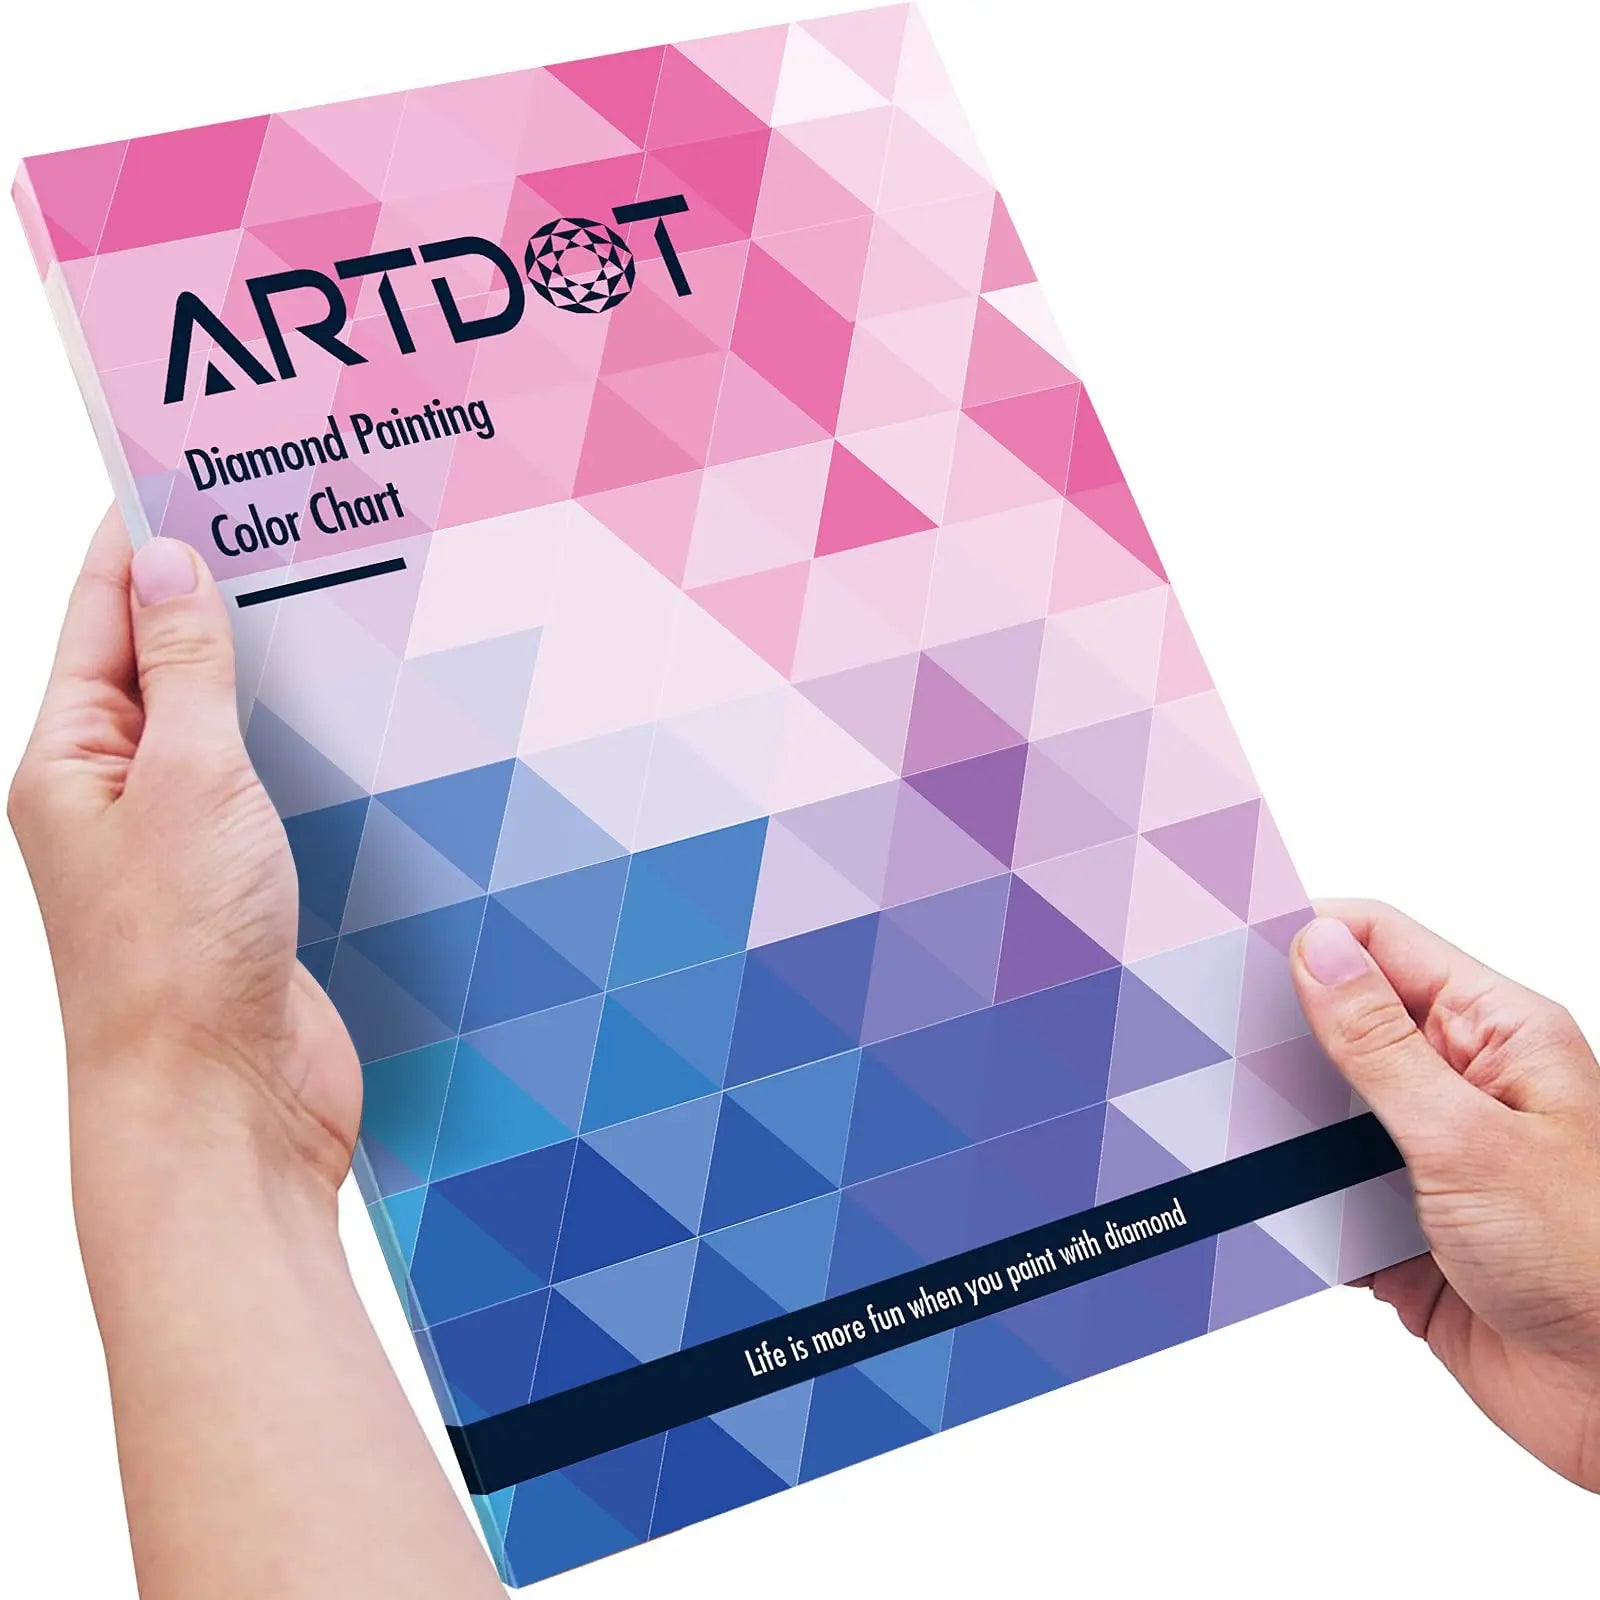 ARTDOT Diamond Painting Color Chart : r/diamondpainting